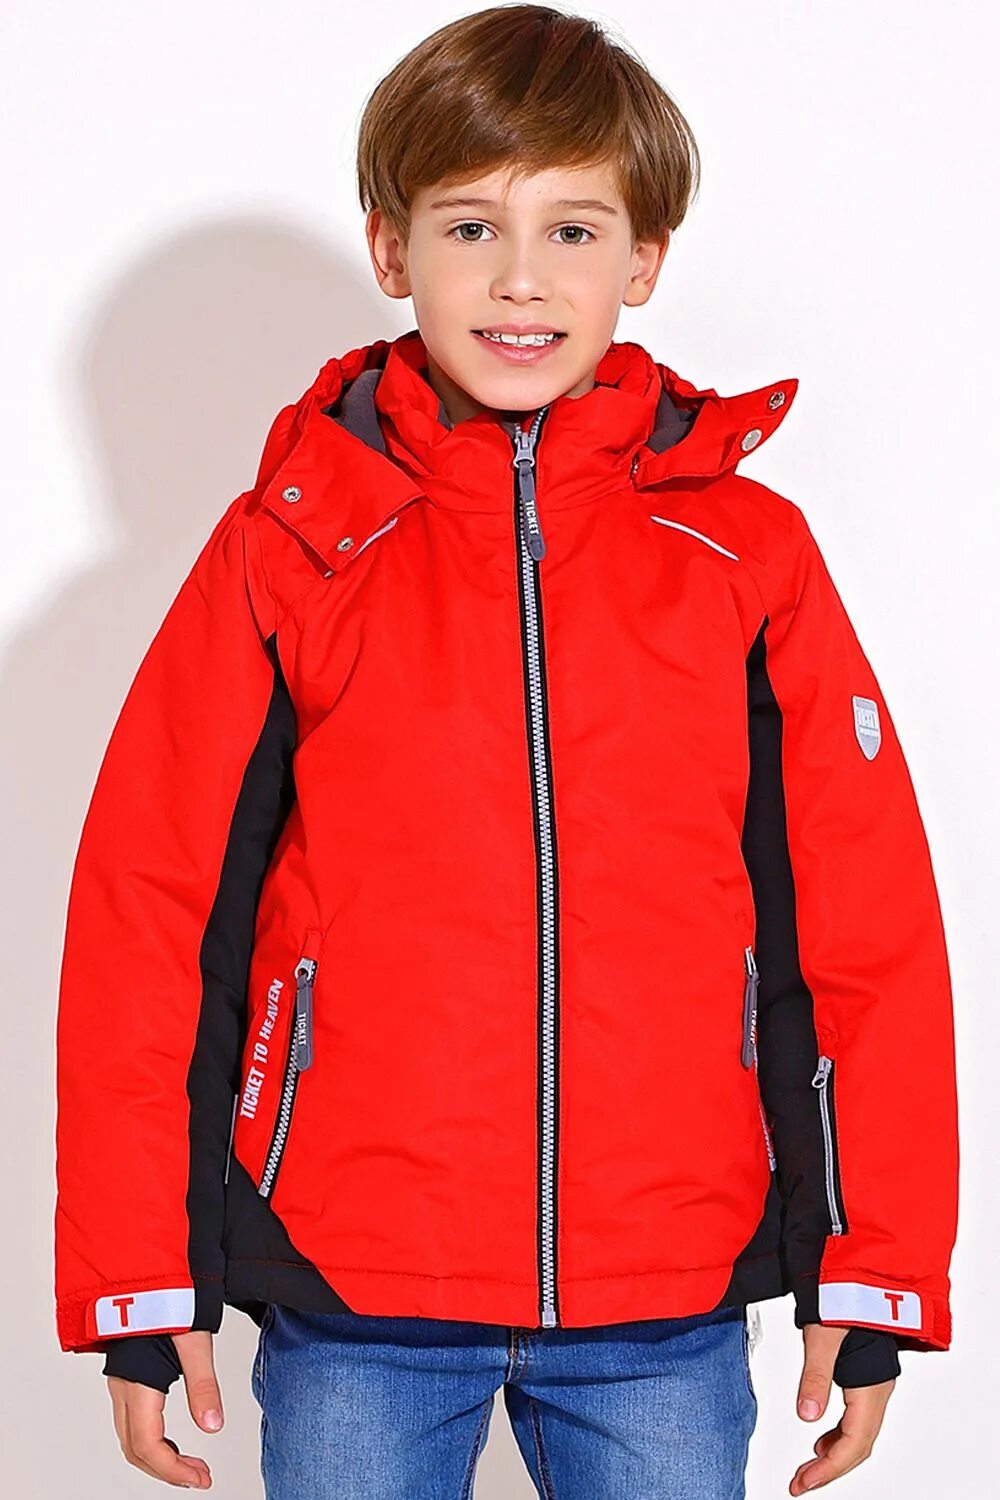 Куртка мальчик 11 лет. Куртка для мальчика. Куртки подростковые для мальчиков. Куртки для подростков мальчиков. Красная куртка для мальчика.